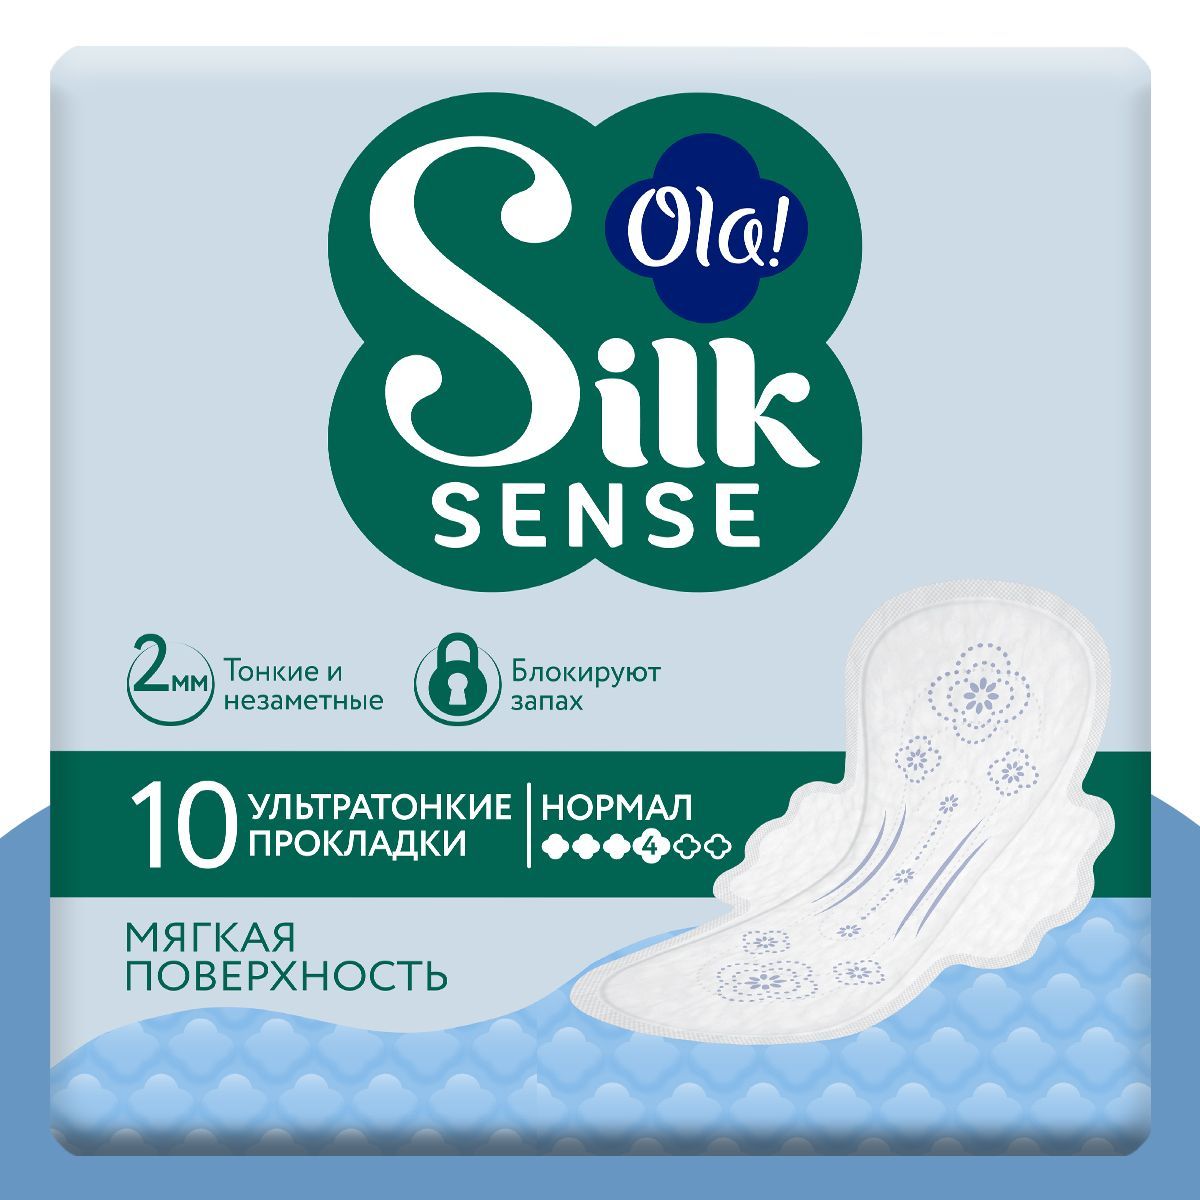 Ультратонкие прокладки Ola! с крылышками Silk Sense Ultra Нормал мягкая поверхность без аромата 10 шт - фото 1